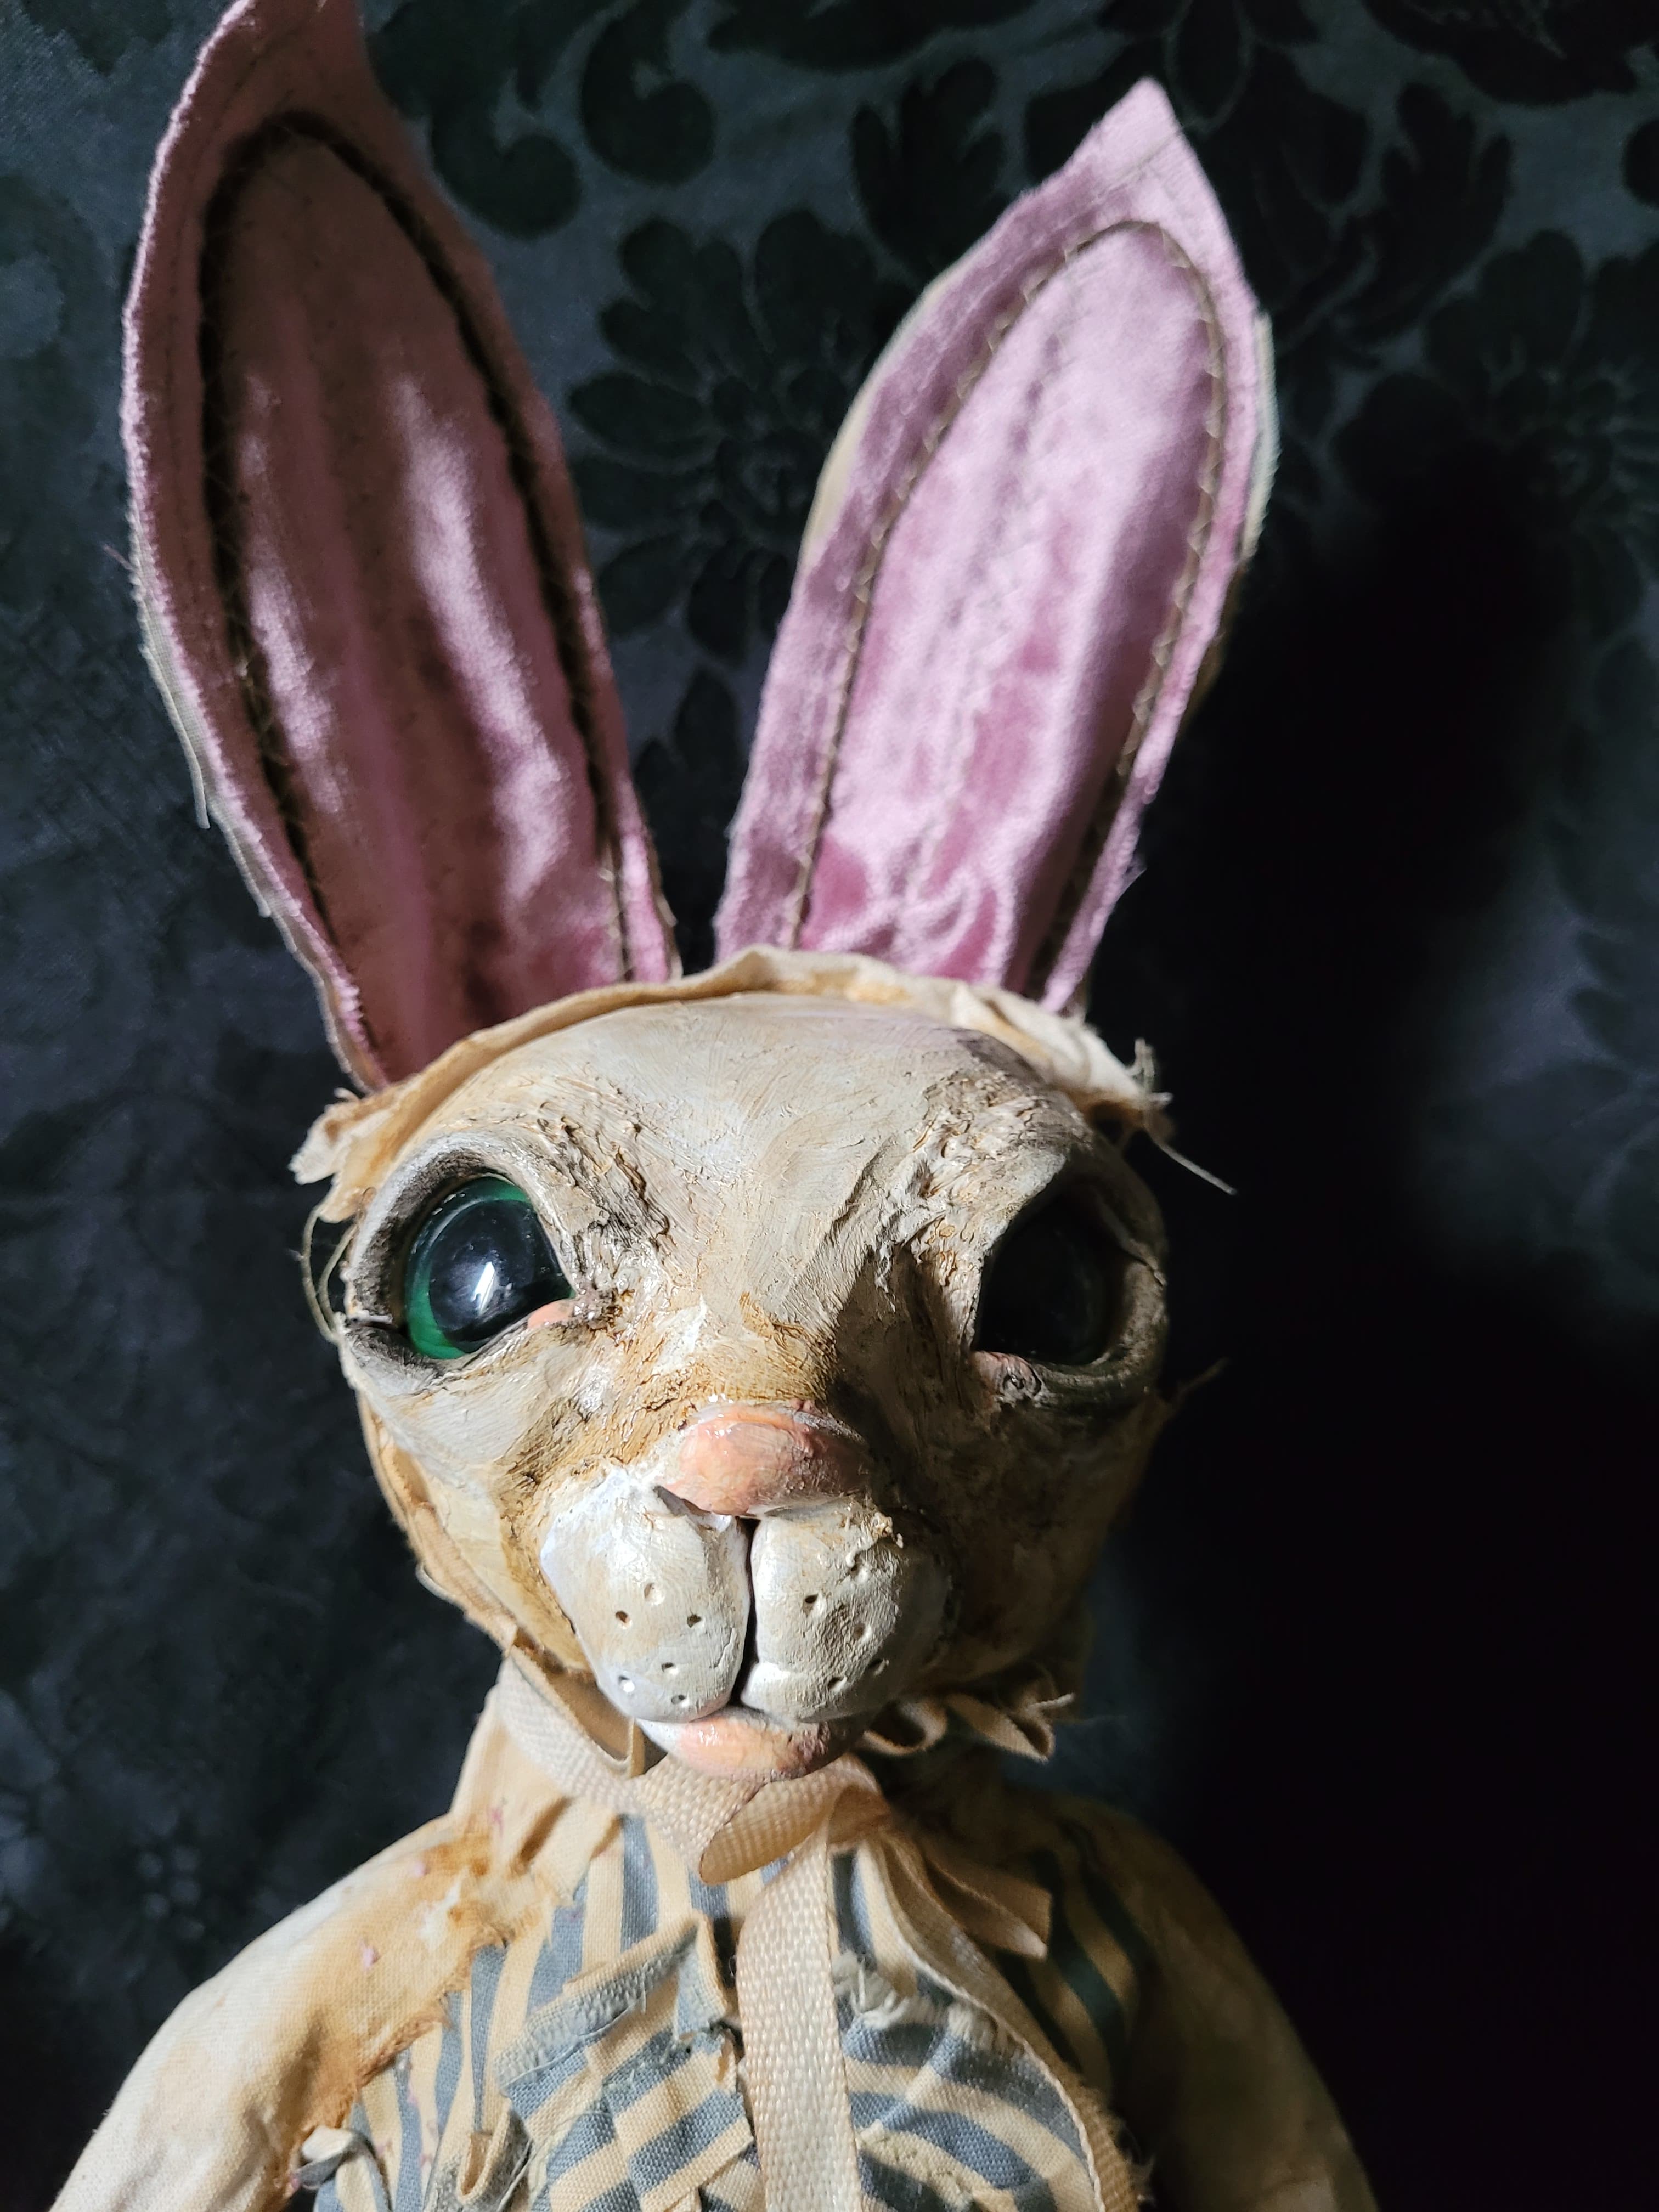 LAVENDELLE Rabbit Sculpture